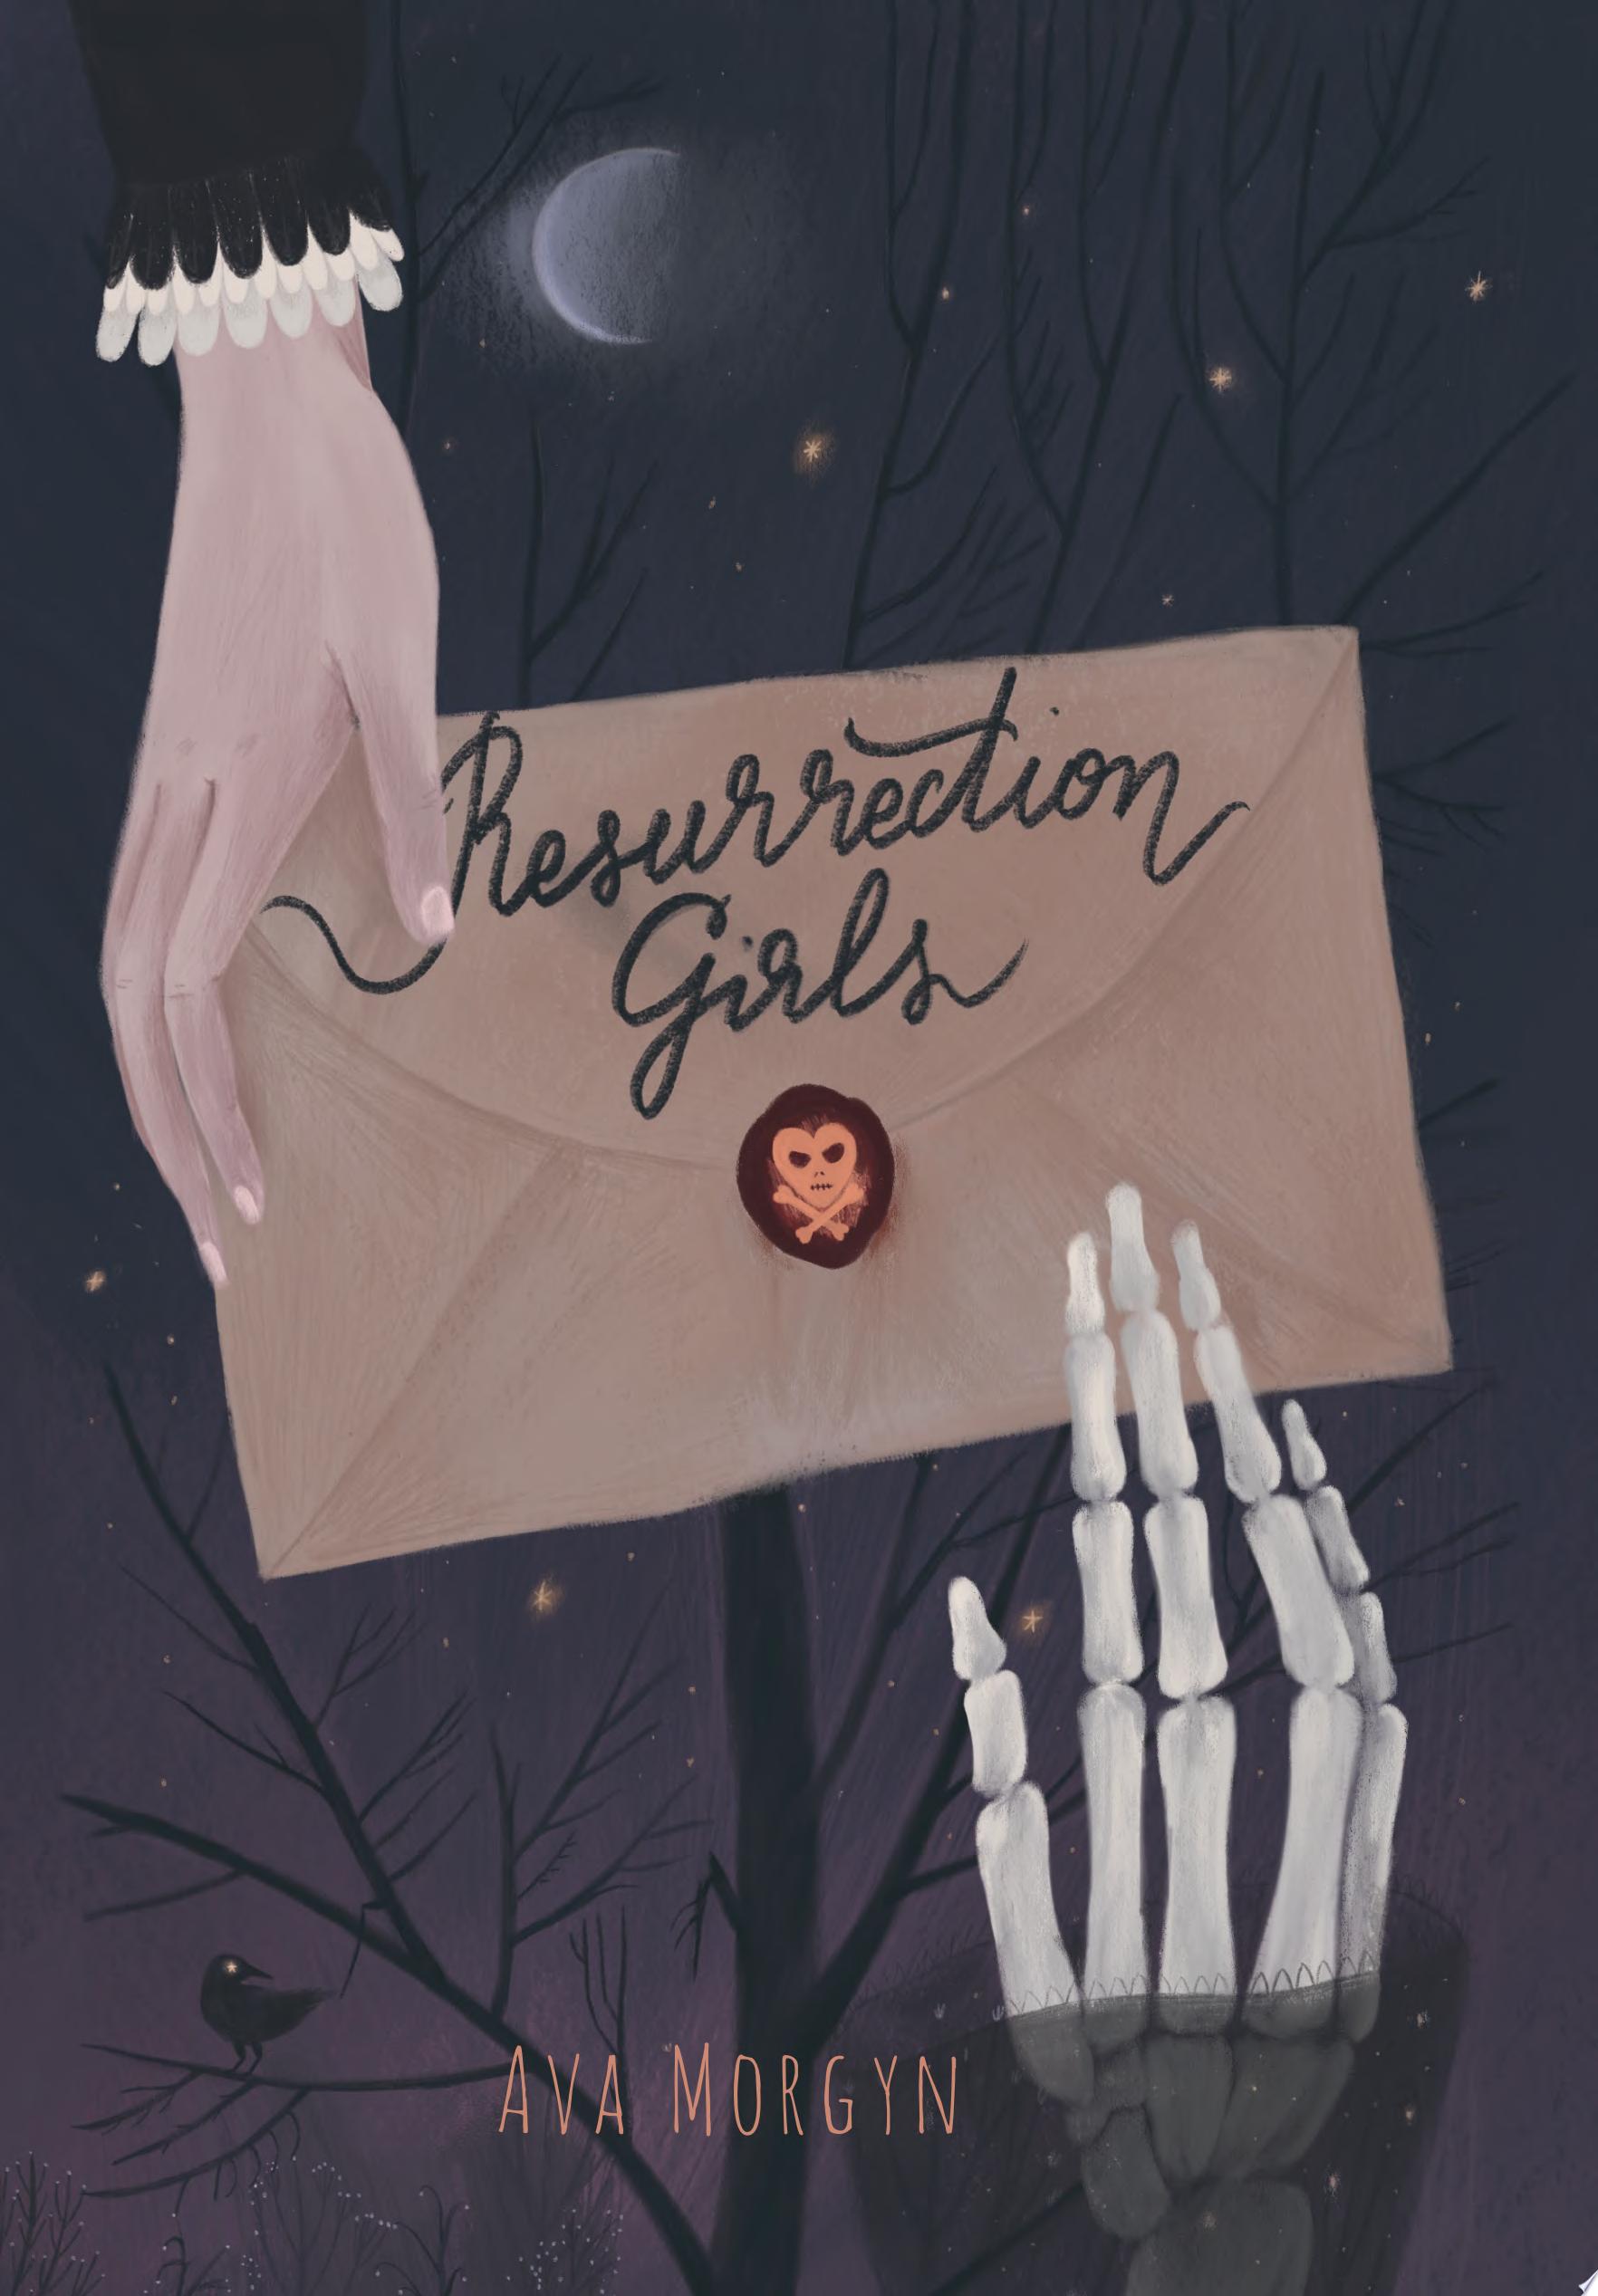 Image for "Resurrection Girls"